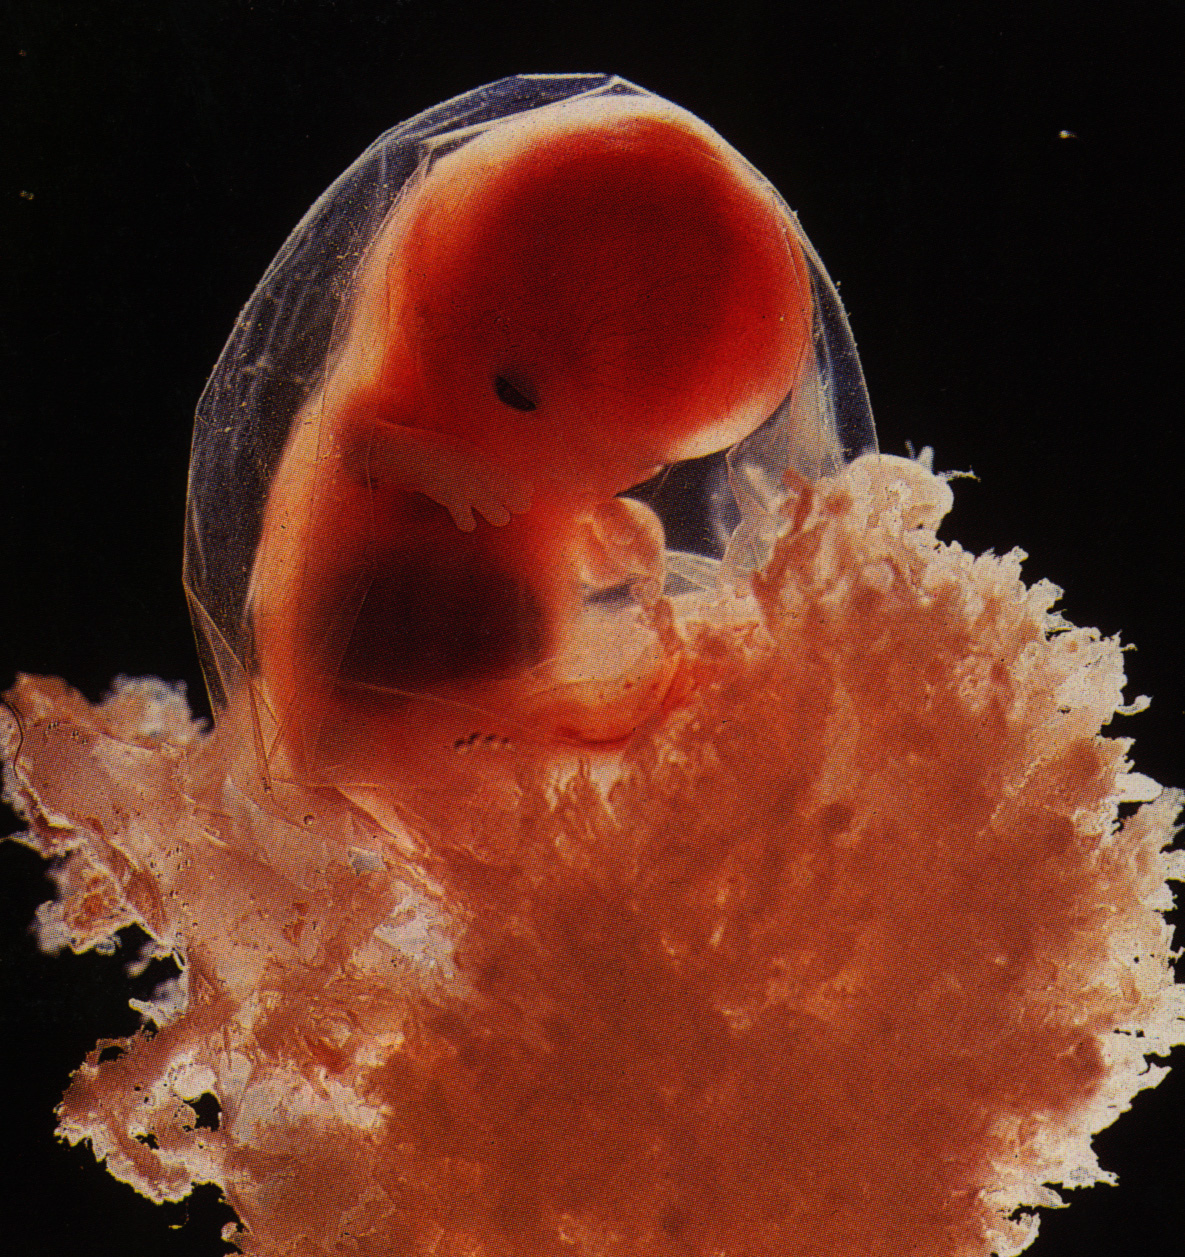 Тошнит 6 недель. Эмбрион на 4 эмбриональной неделе беременности. Зародыш 3-4 недели беременности. Юбрион в 4 недели беременности.